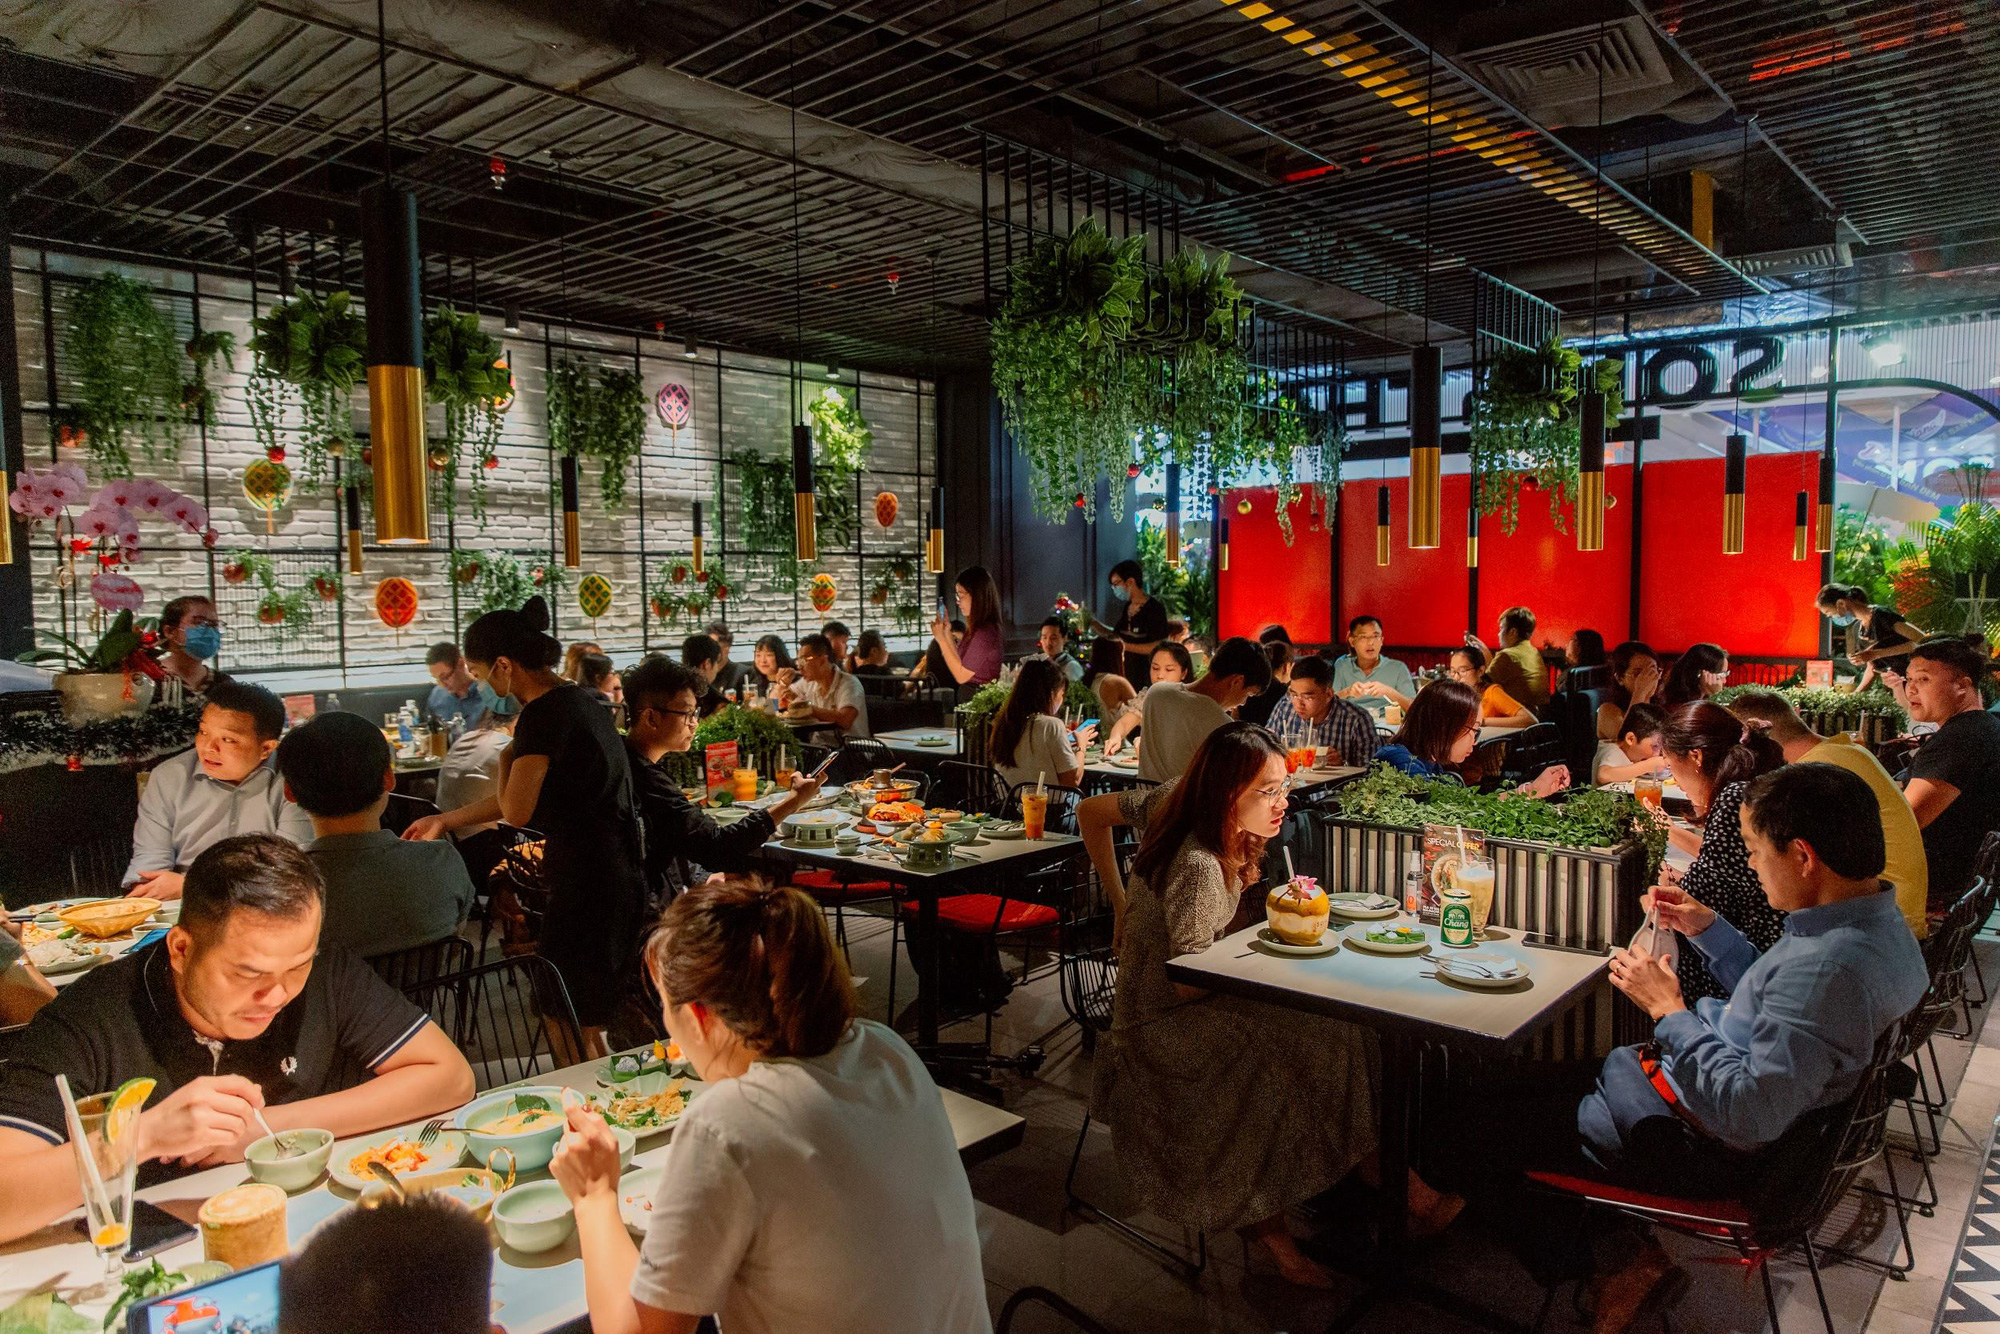 “Càn quét” nhà hàng món Thái mới toanh tại Sài Gòn: Giá rẻ hơn tưởng tượng, đồ ăn liệu có chuẩn vị như quảng cáo? - Ảnh 1.